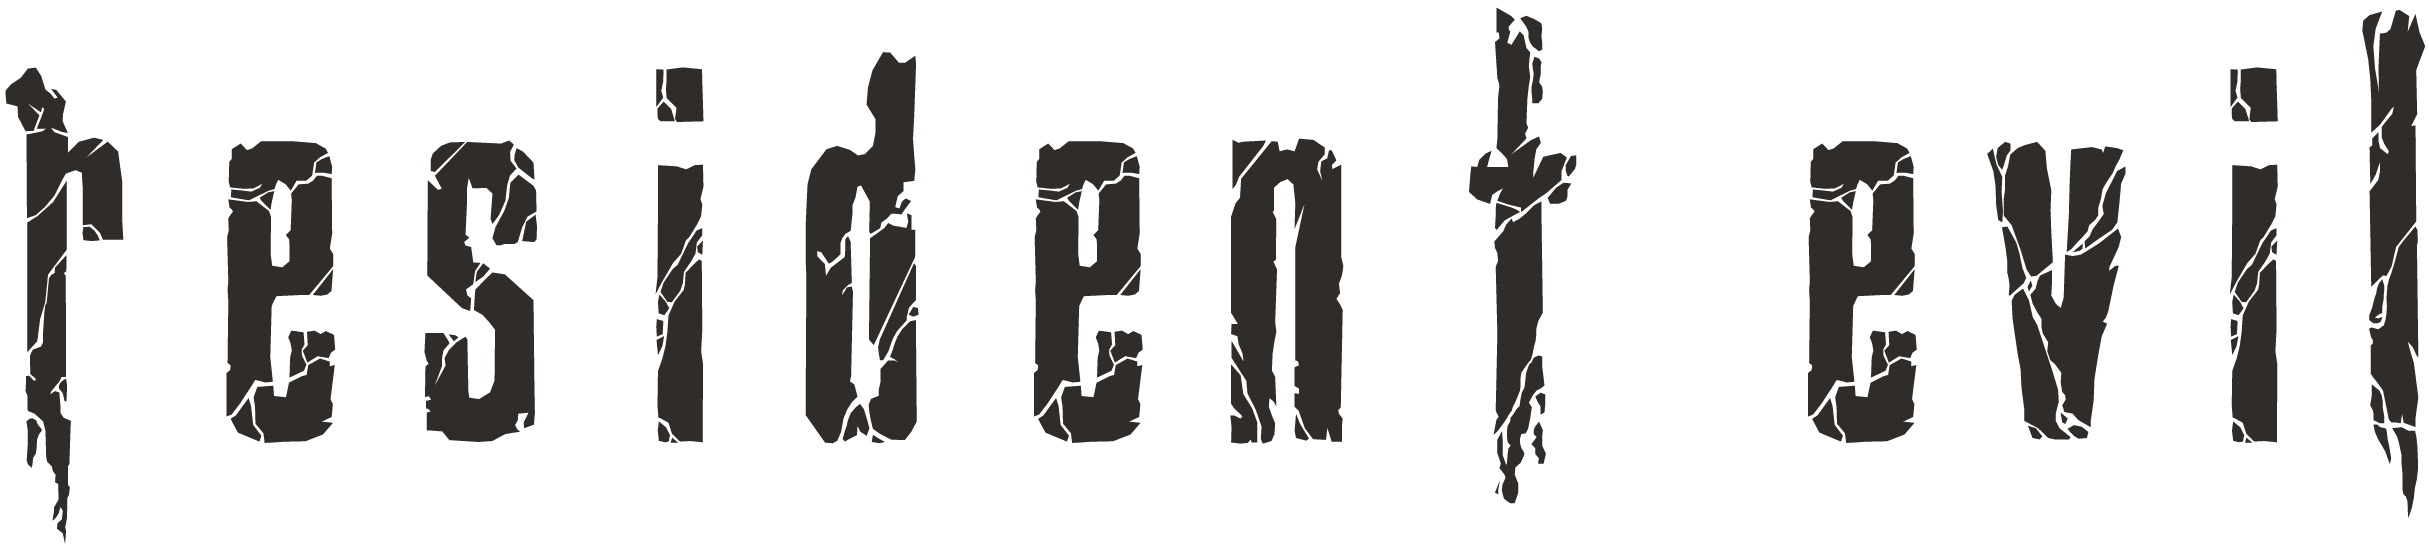 Resident_evil_series_logo.png